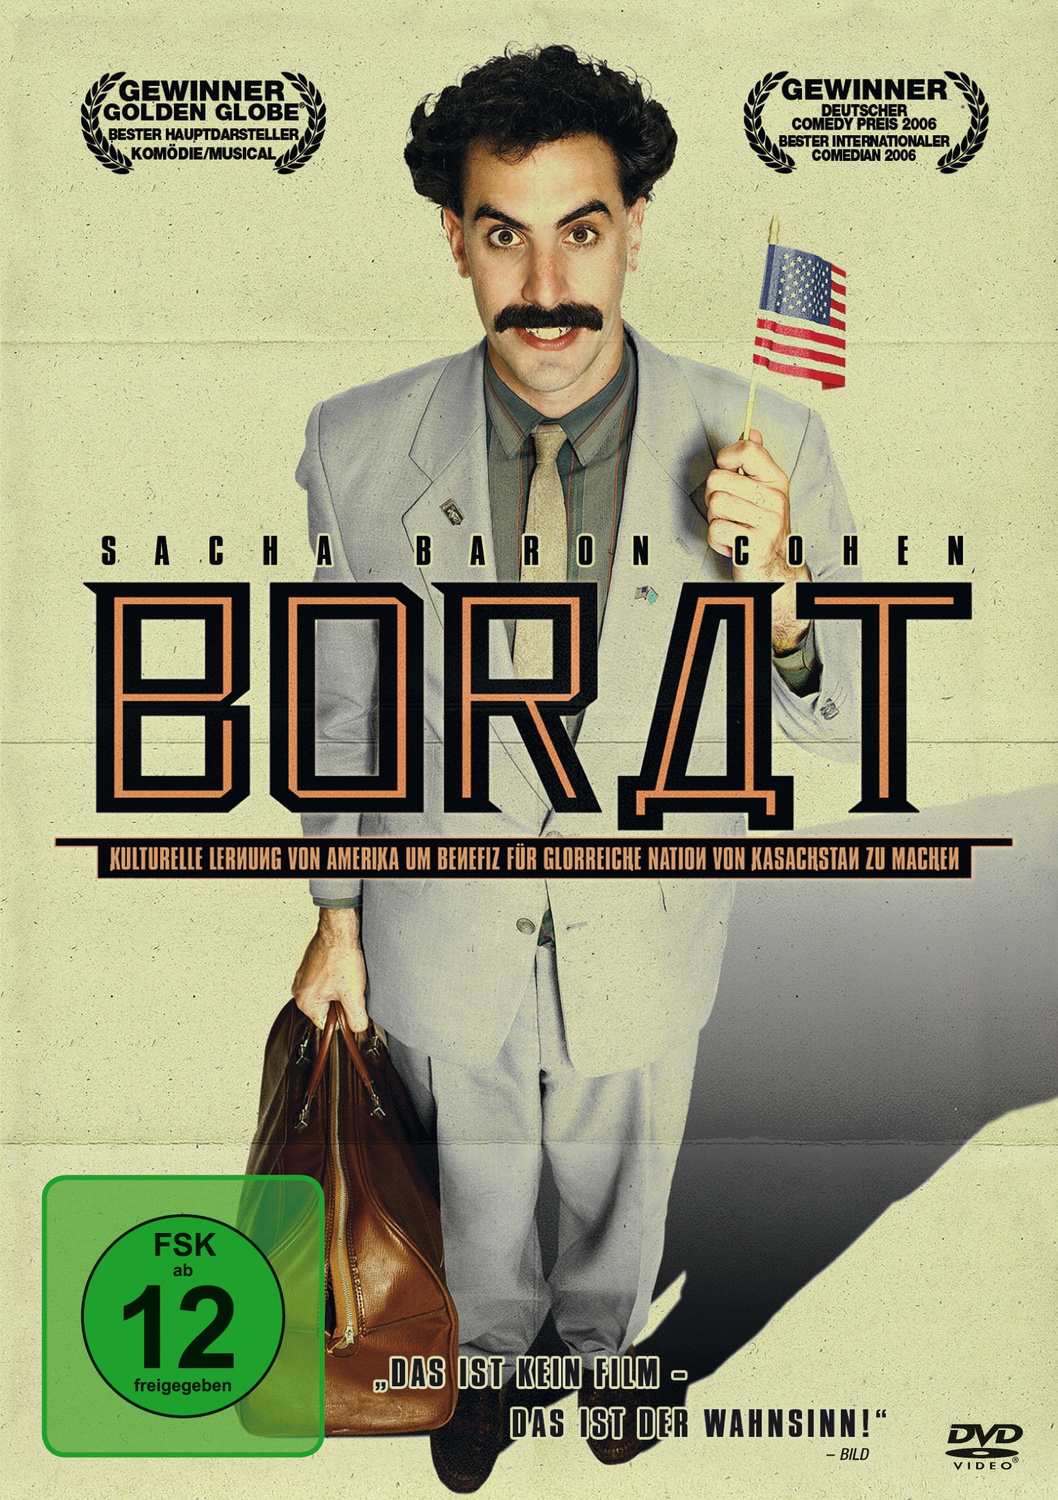 borat dvd cover